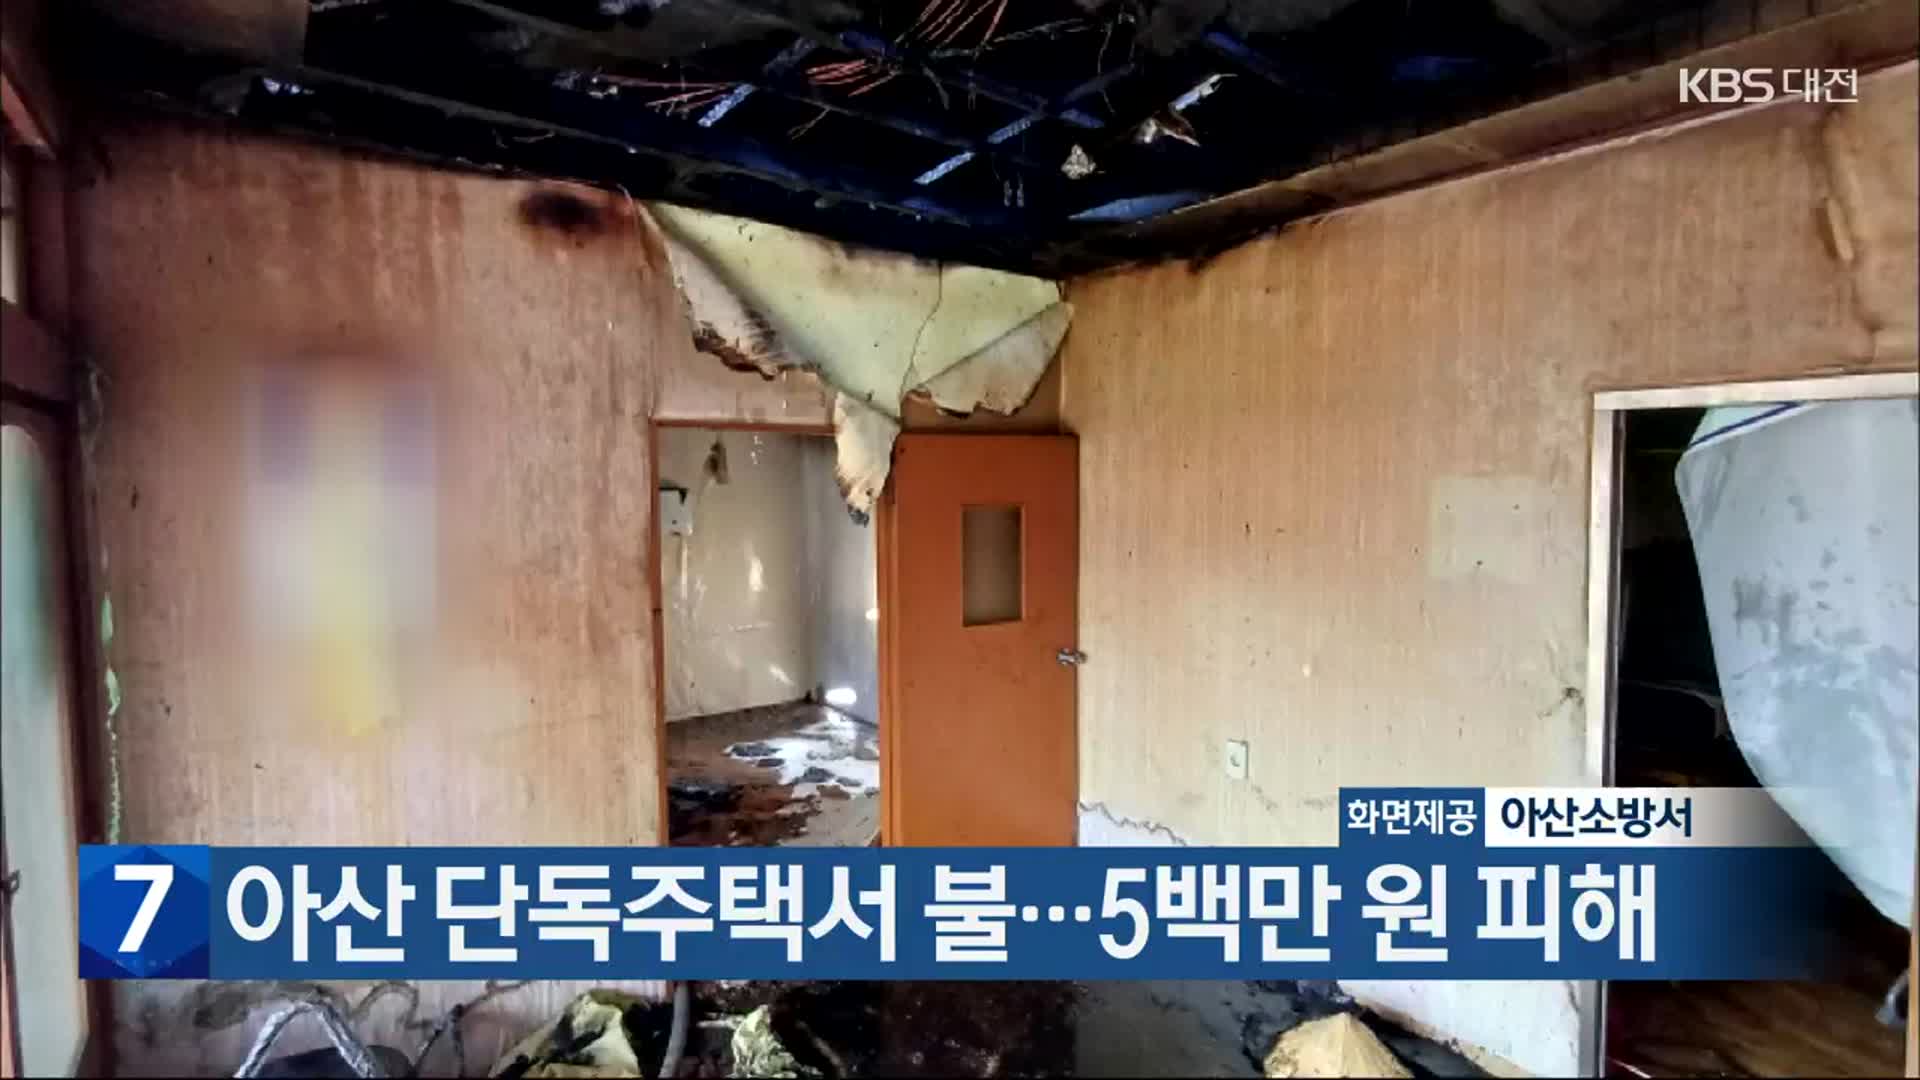 아산 단독주택서 불…5백만 원 피해